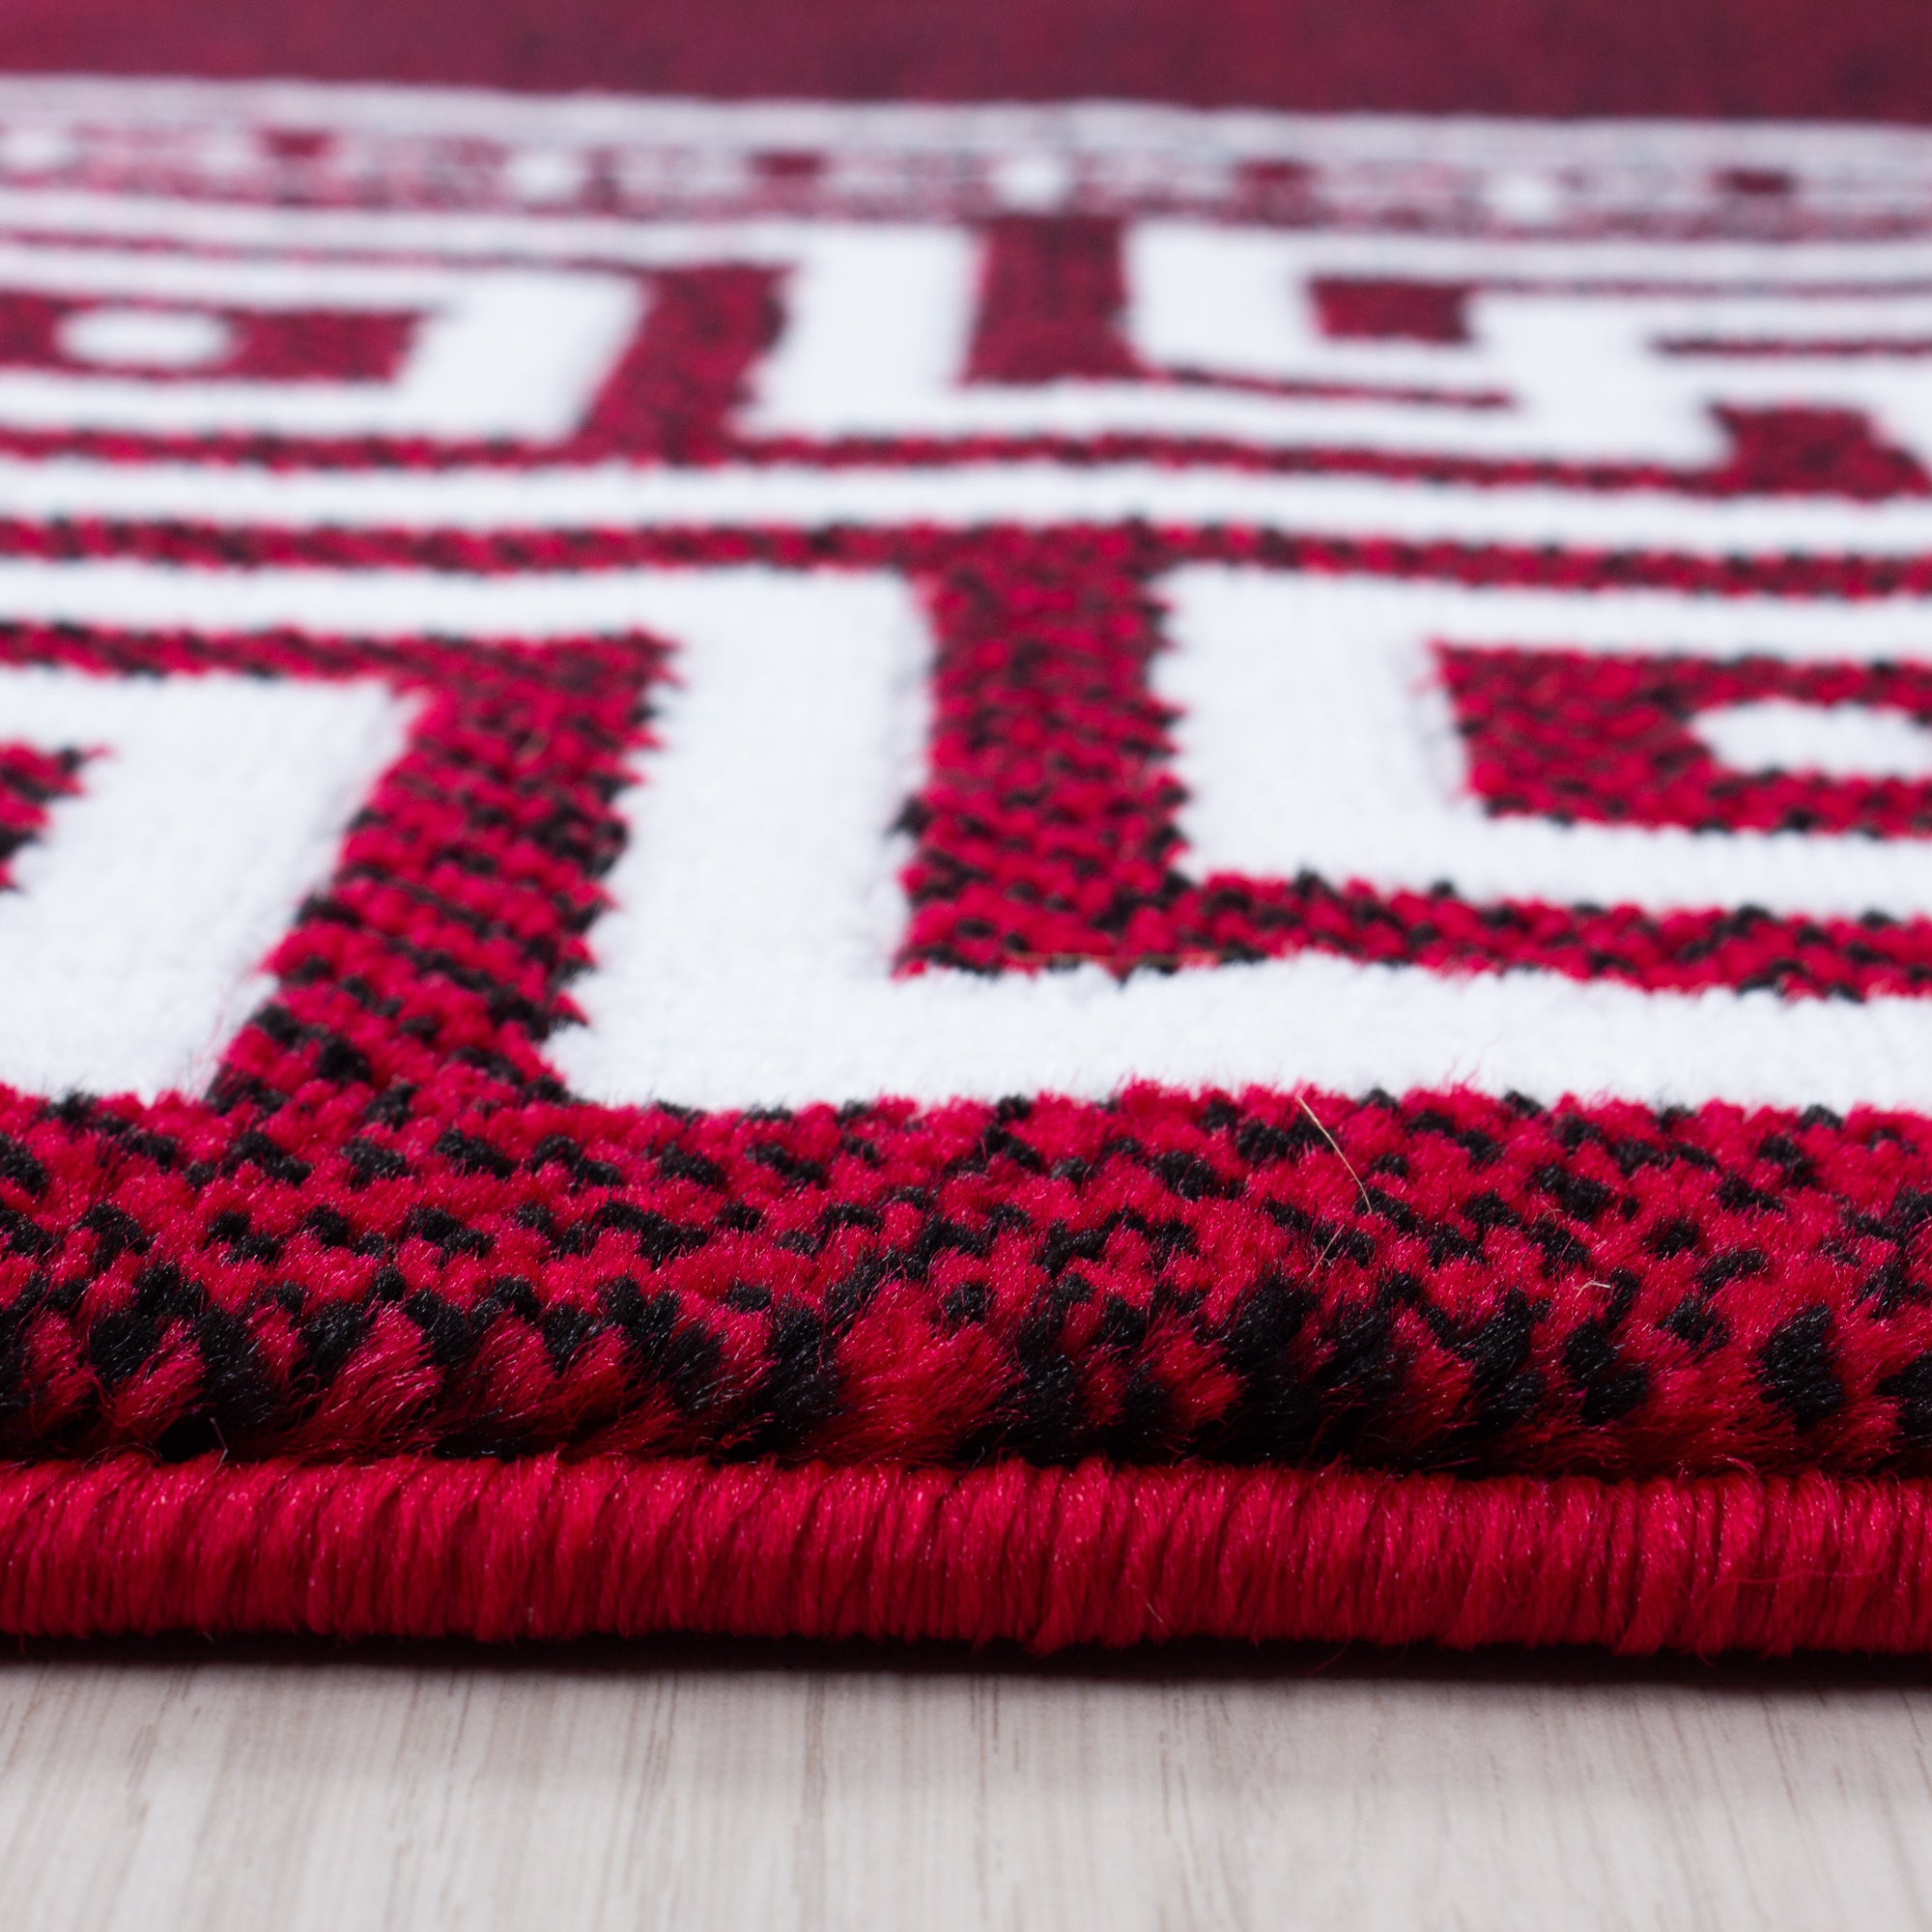 Moderner Kurzflor Teppich Griechiches Muster Bordüre Wohnzimmer Rot Meliert